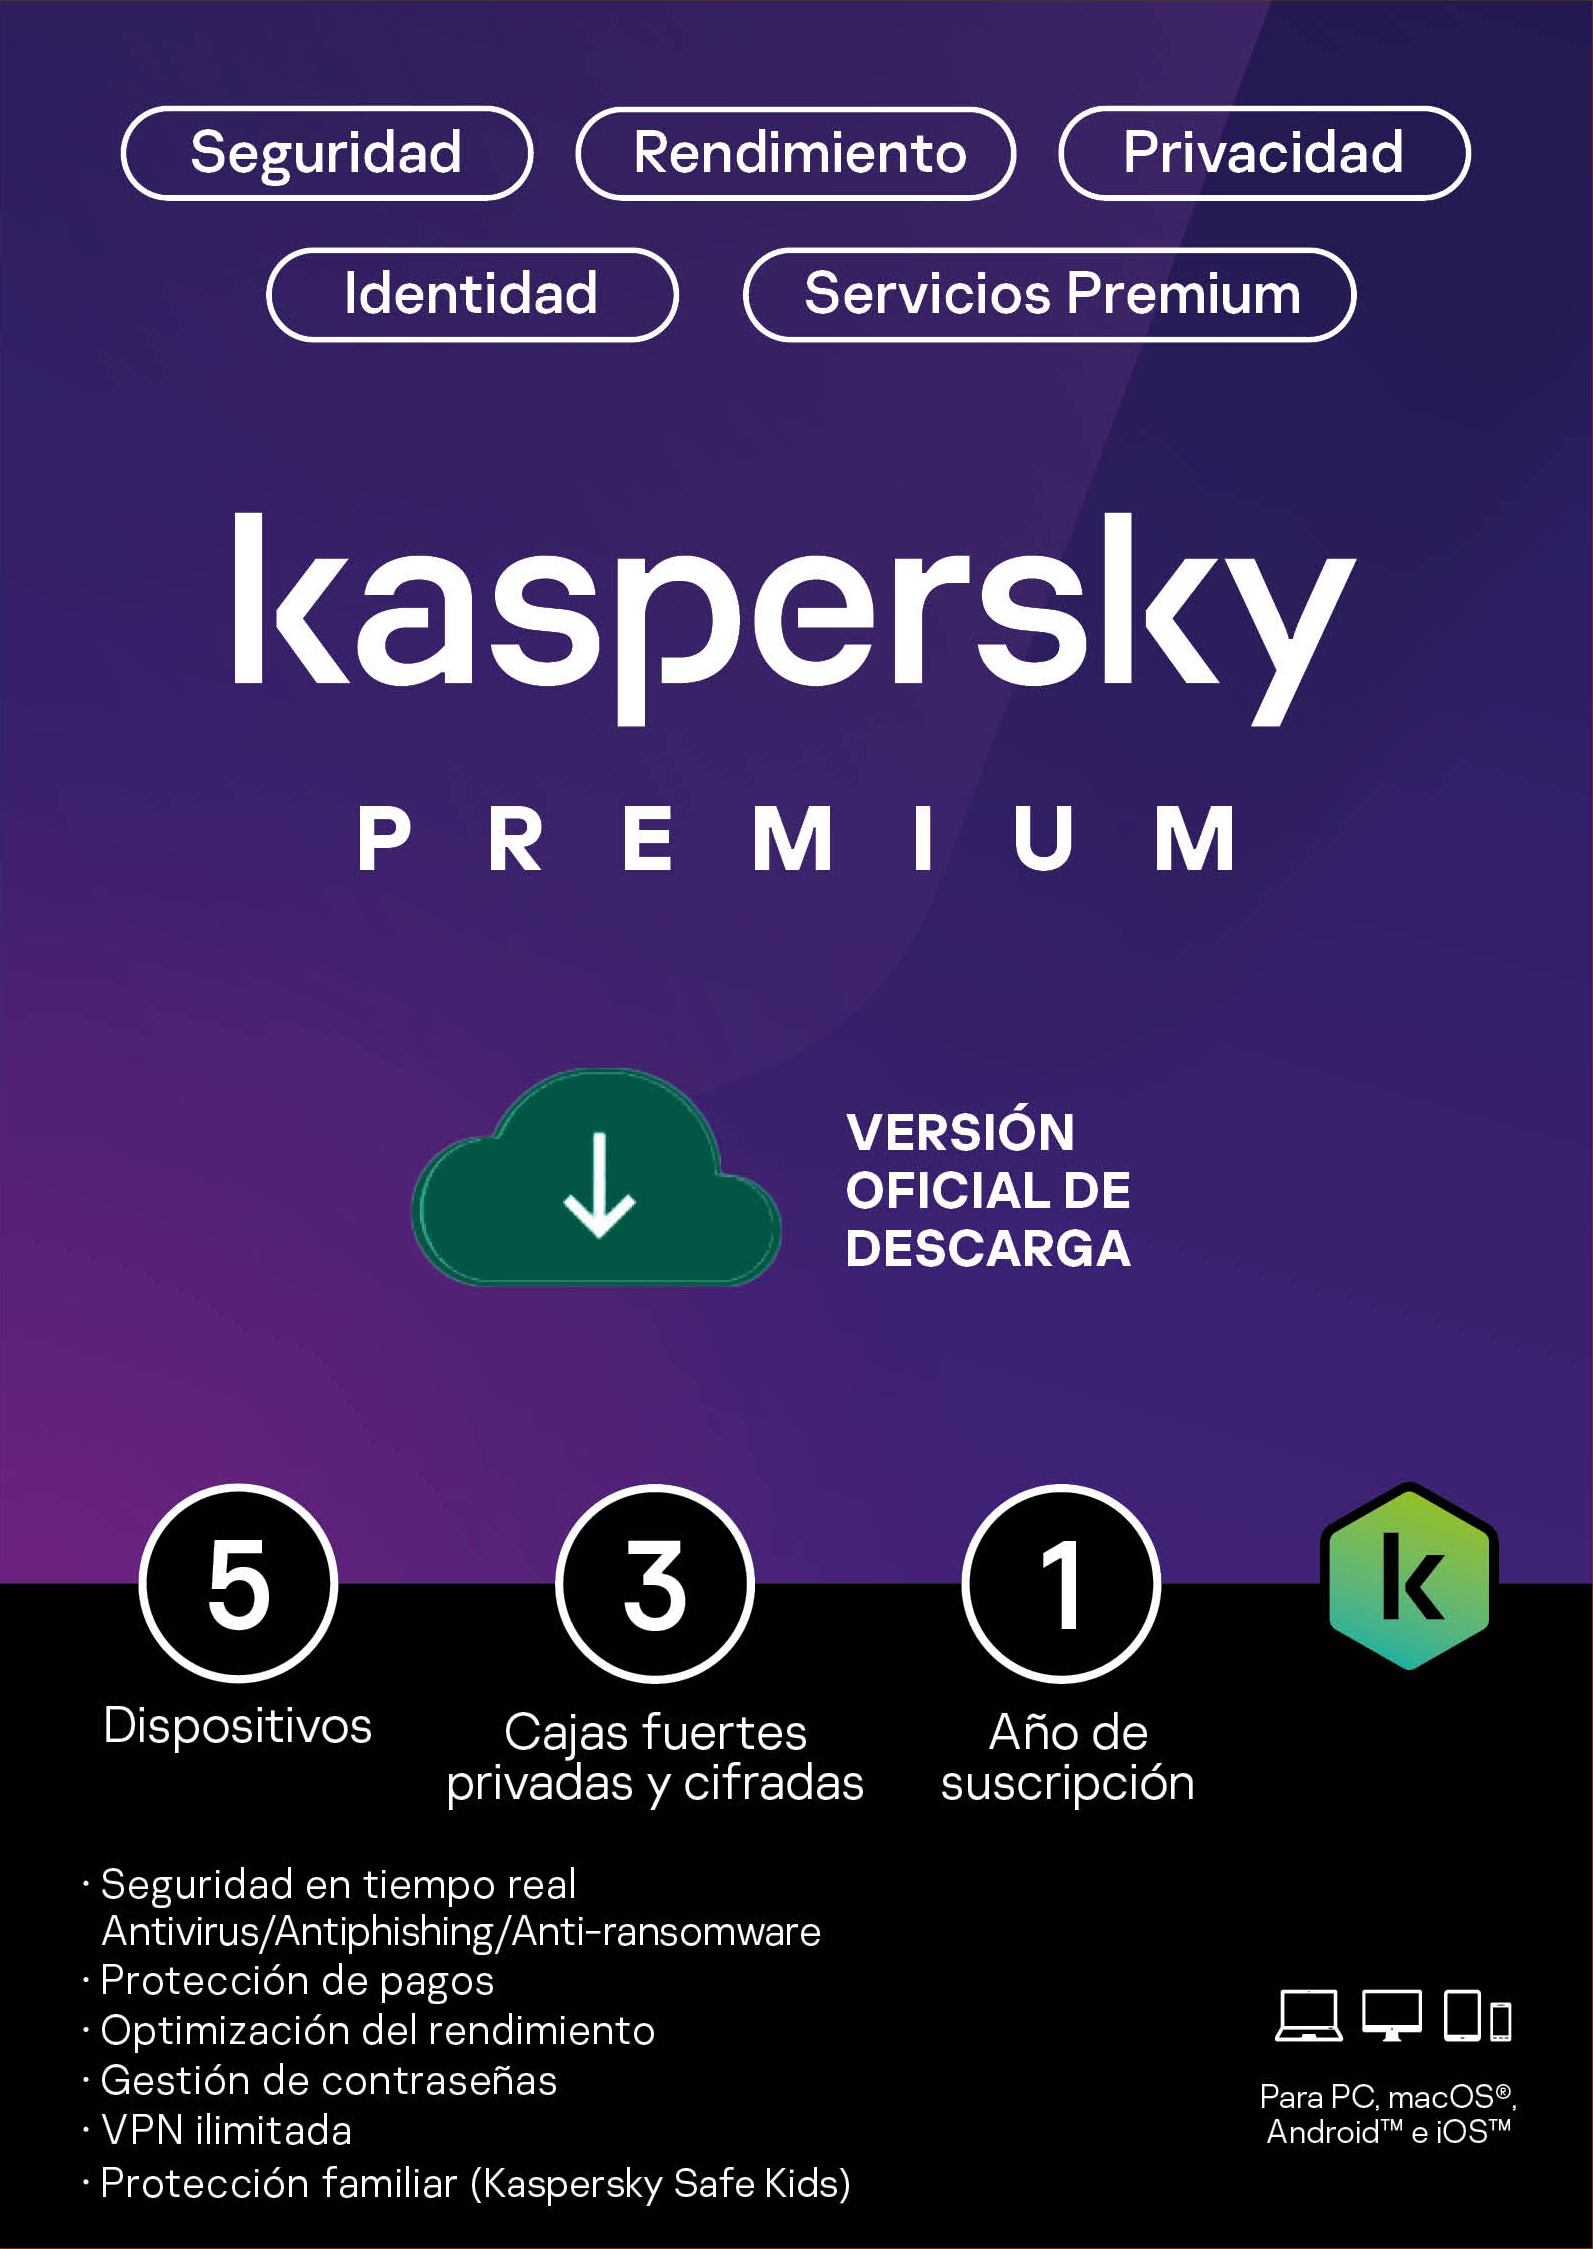 Licencia Kaspersky Premium 5 dispositivos por 1 año